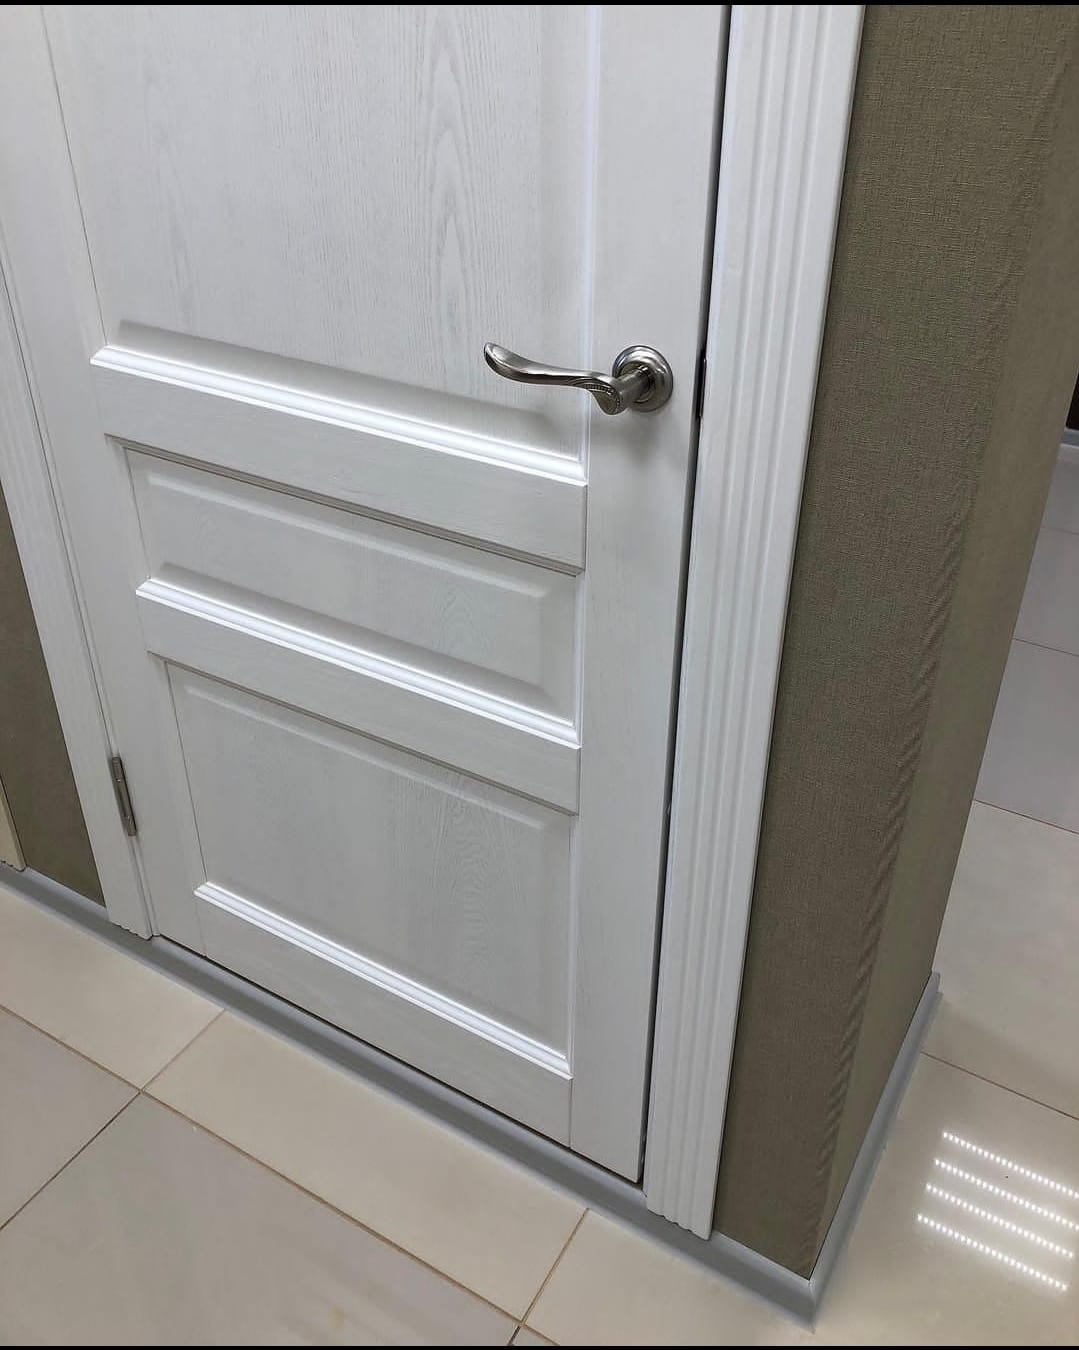 Межкомнатная дверь Модель  №103 Белый жемчуг (ДГ)